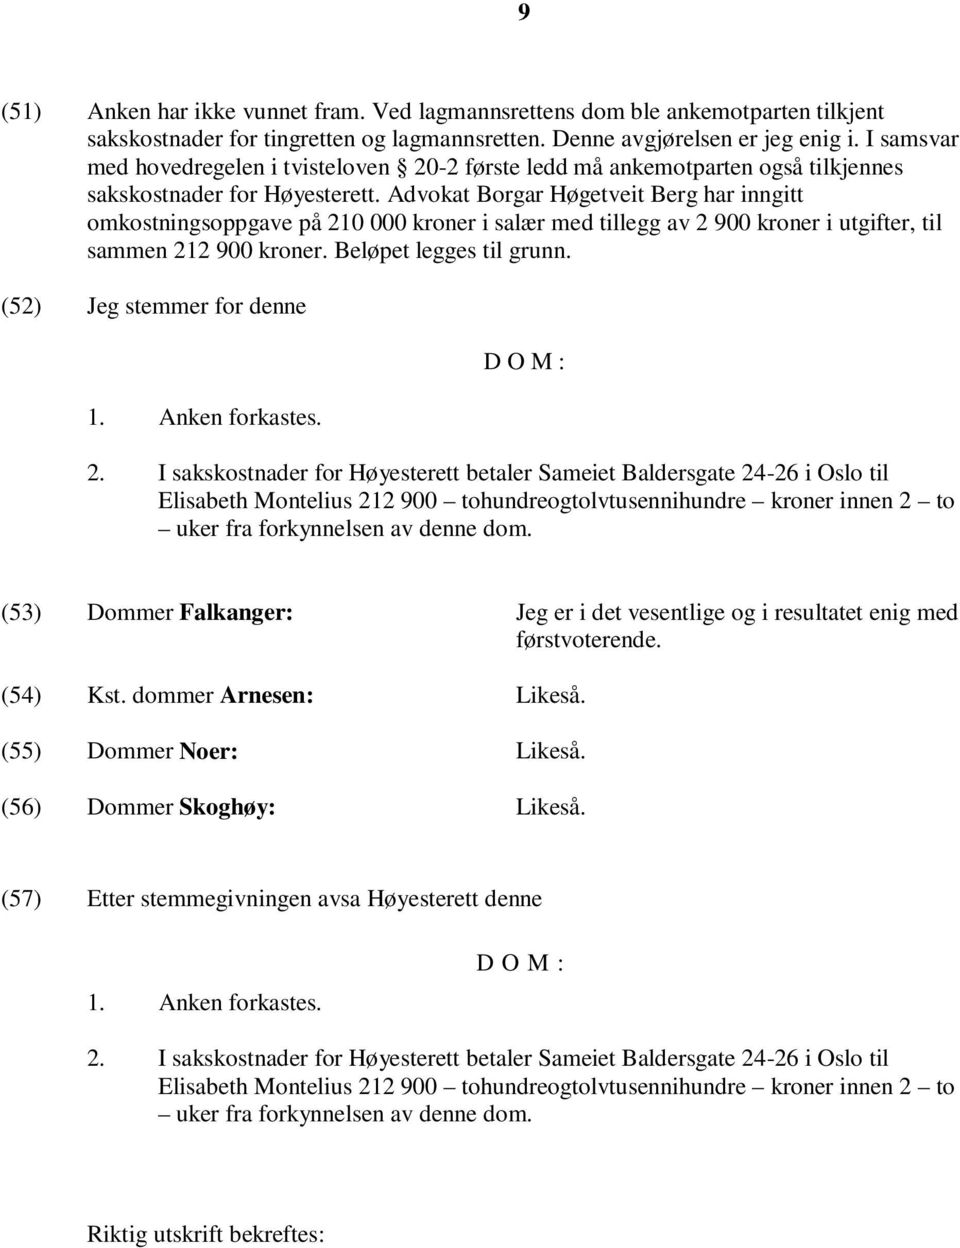 Advokat Borgar Høgetveit Berg har inngitt omkostningsoppgave på 210 000 kroner i salær med tillegg av 2 900 kroner i utgifter, til sammen 212 900 kroner. Beløpet legges til grunn.